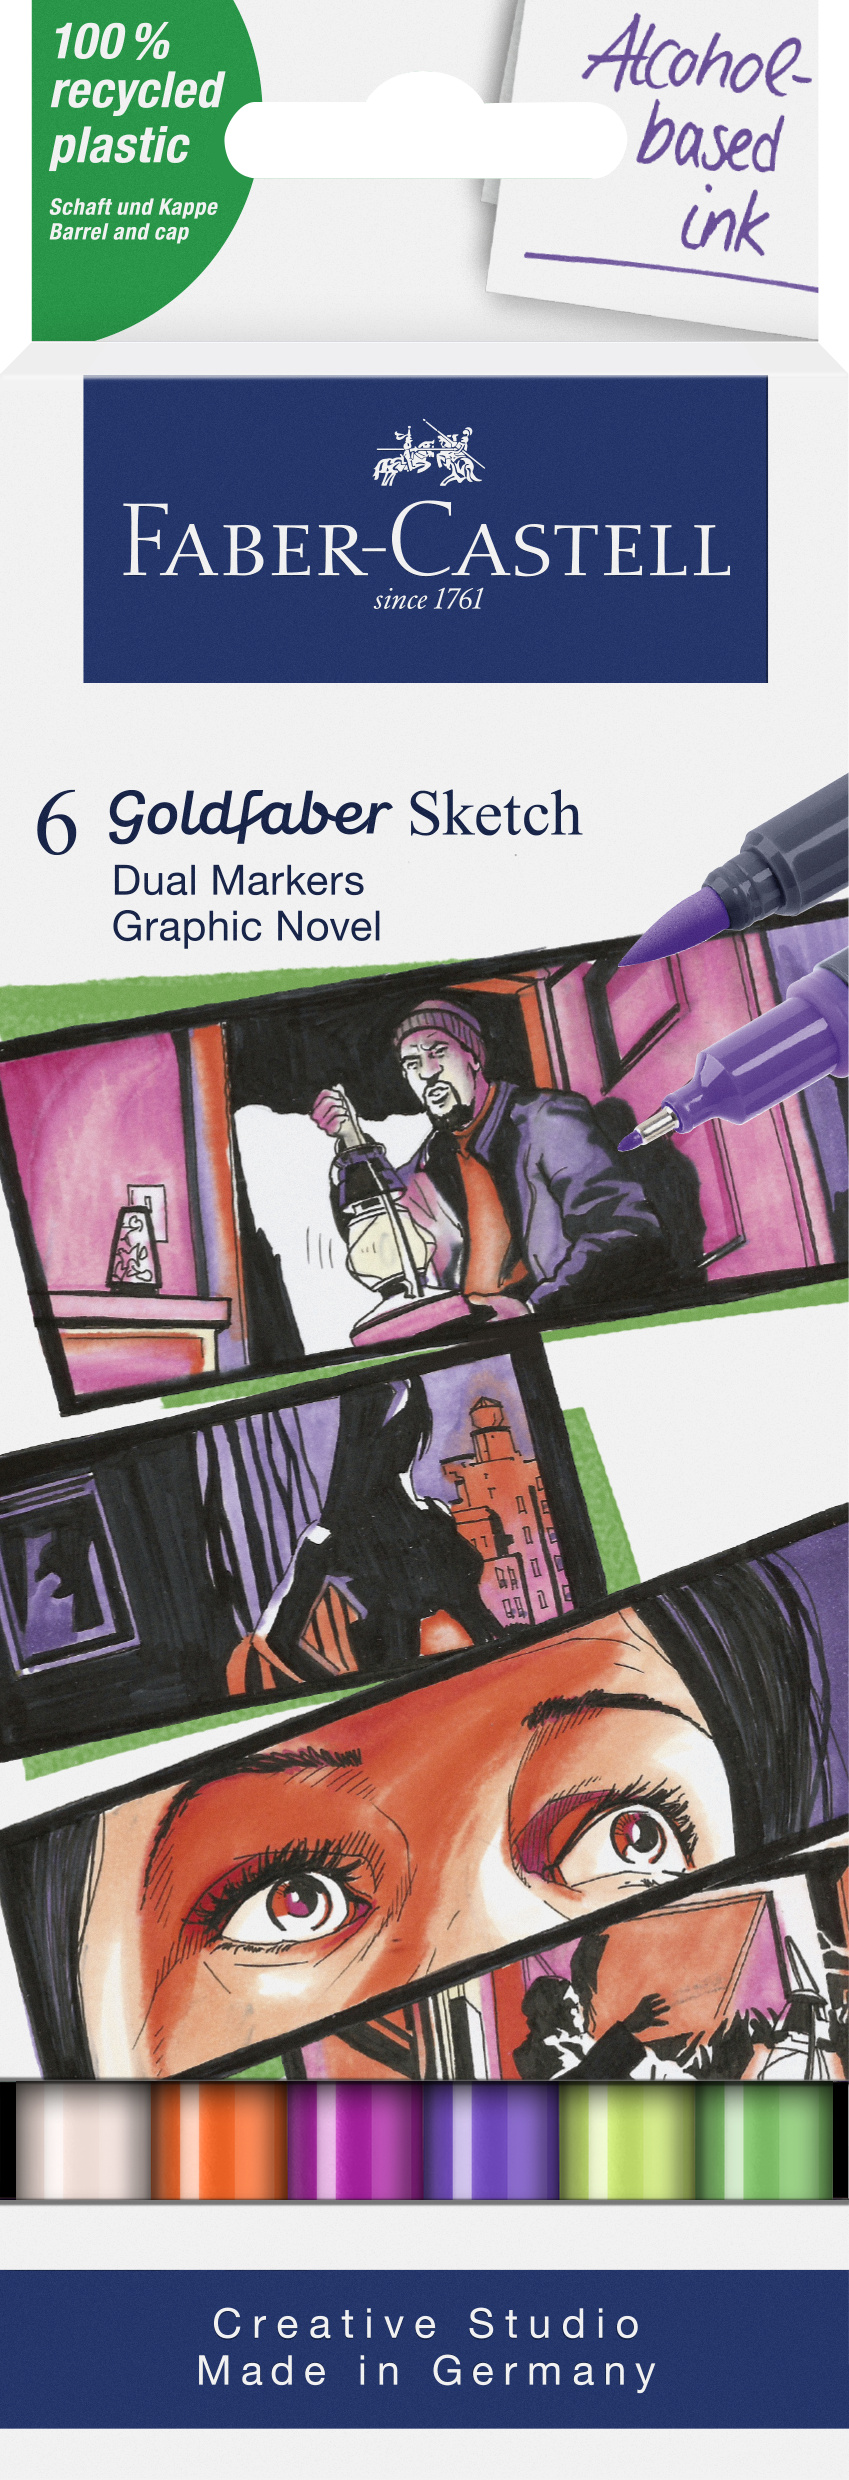 Faber-Castell_Goldfaber Sketch Marker, 6er set, Graphic Novel_EUR 18,00